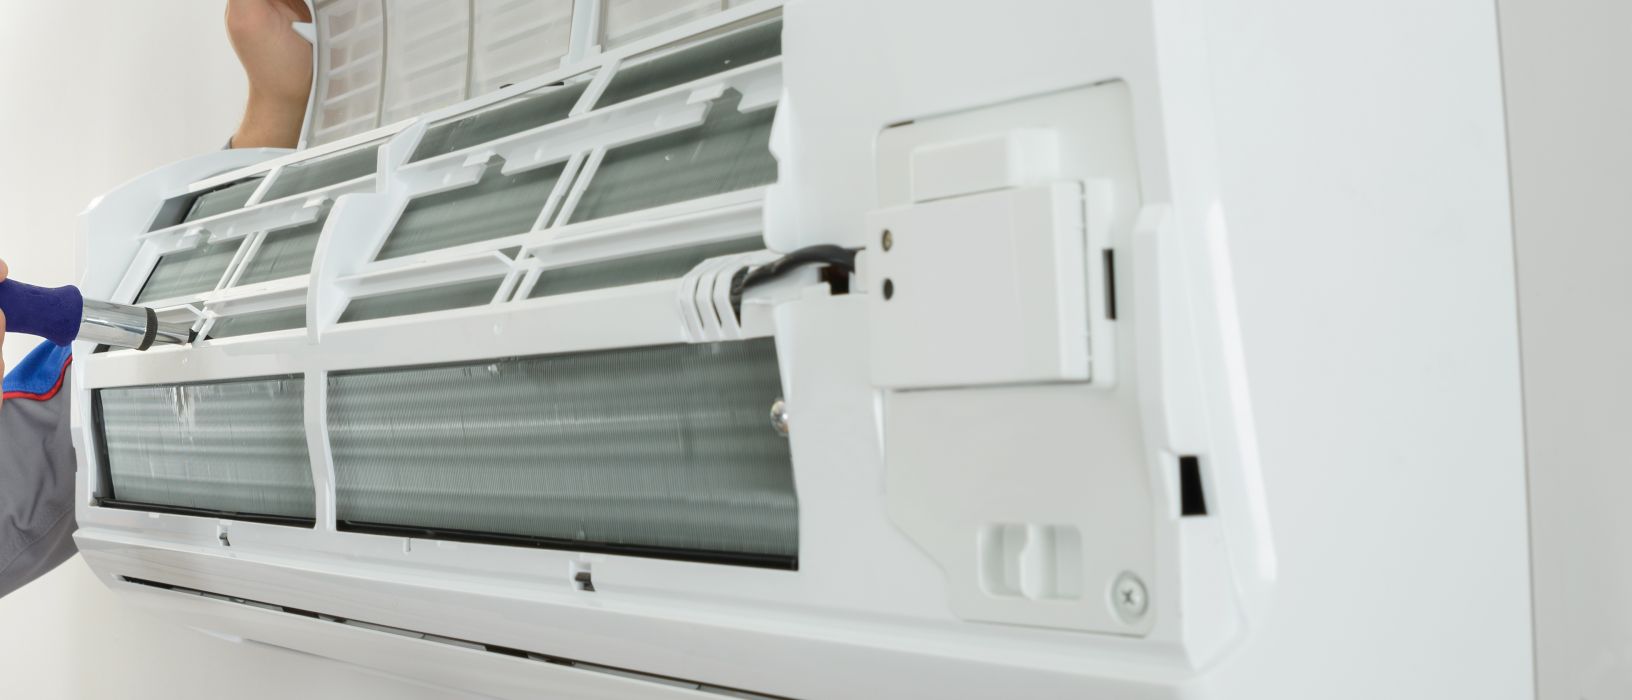 La importancia del mantenimiento preventivo en los aparatos de aire acondicionado